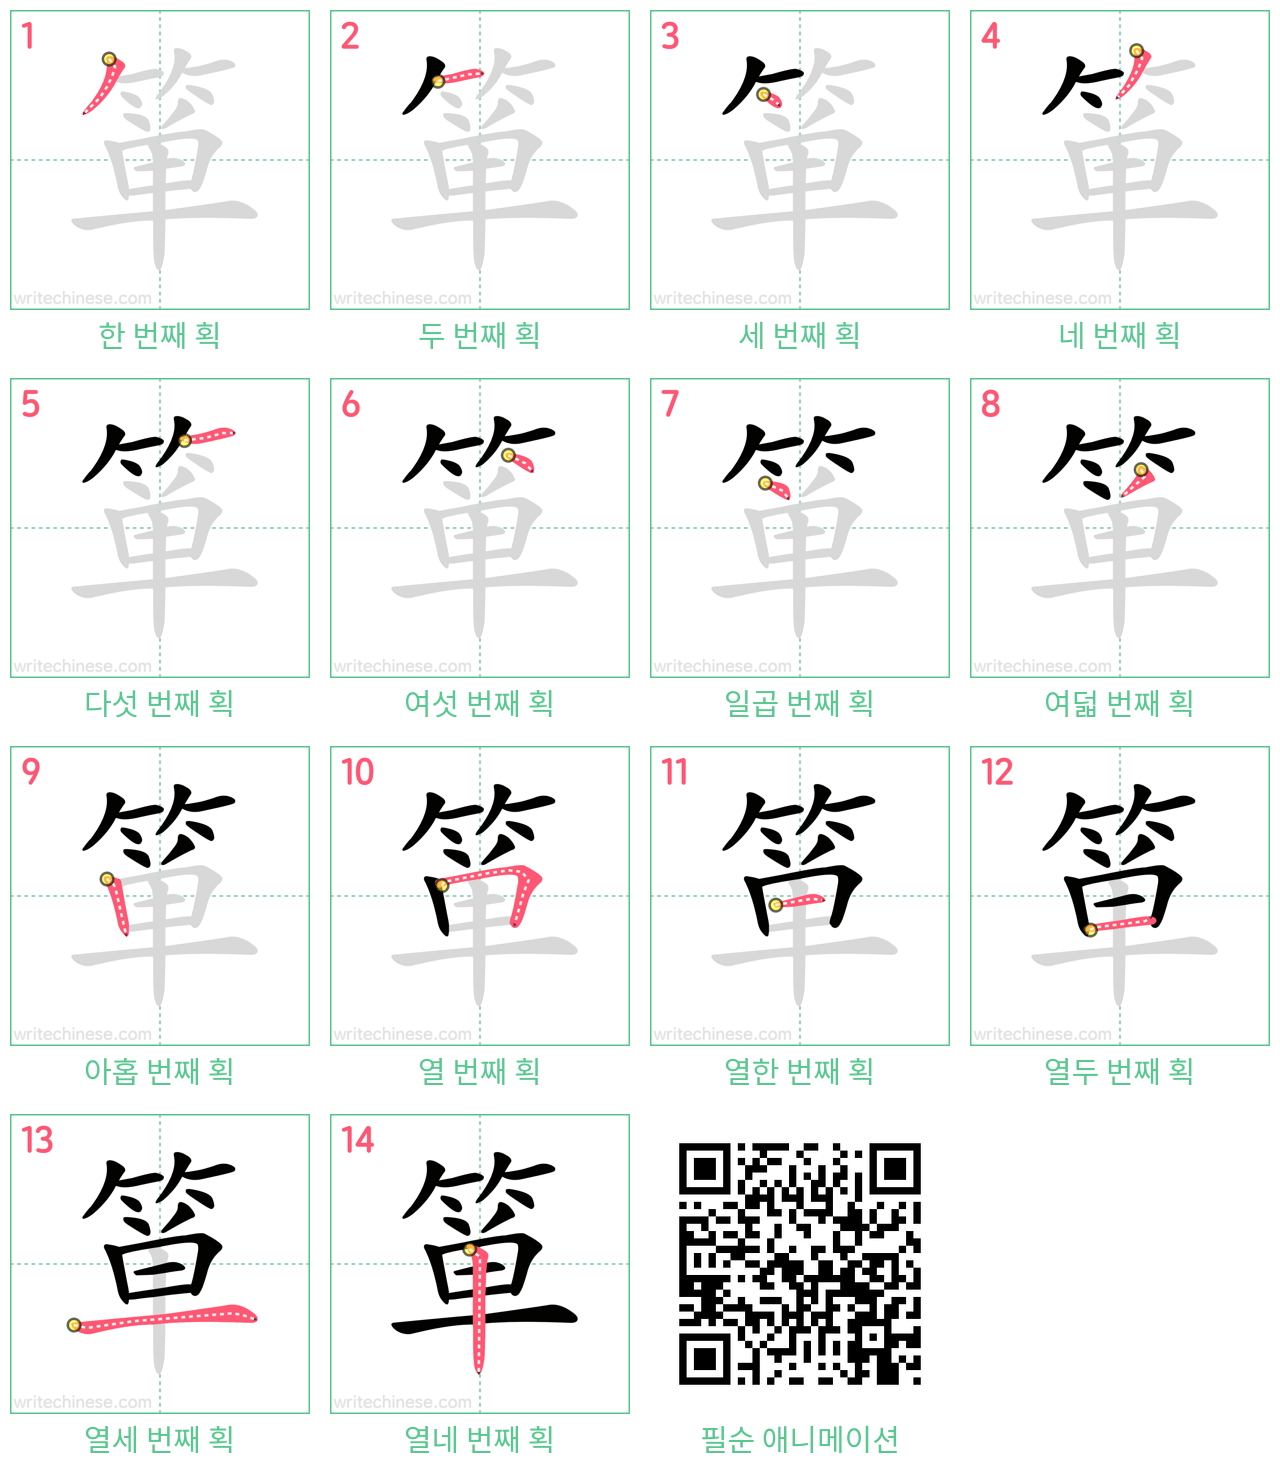 箪 step-by-step stroke order diagrams